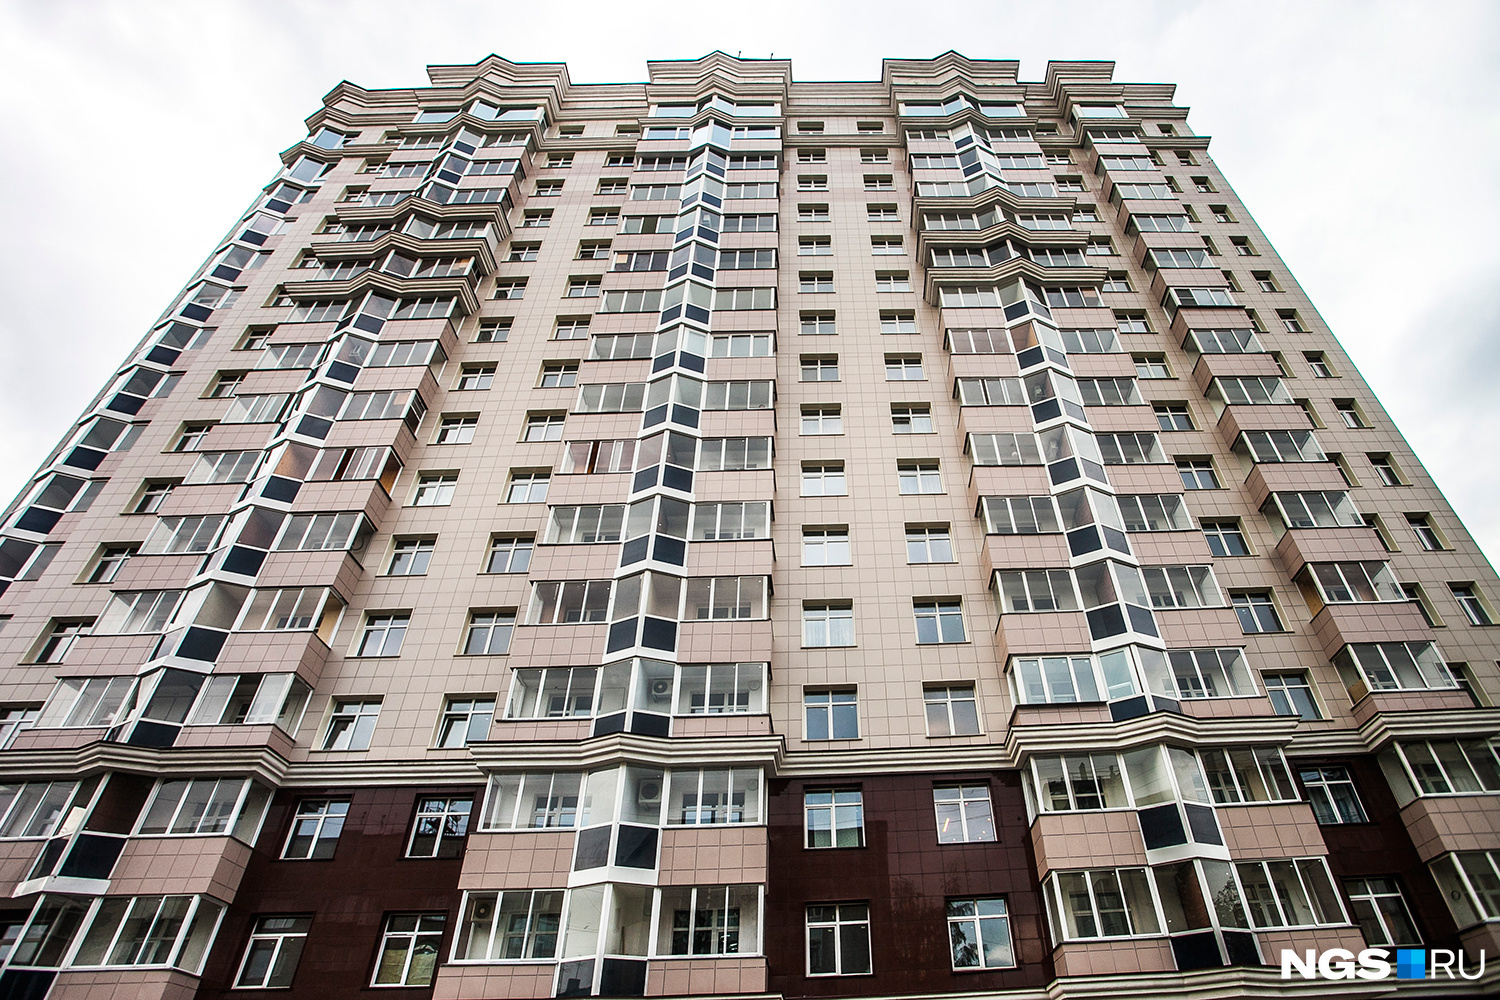 Раньше на Романова, 25 был детский сад, а теперь высится дом компании «КМС». Сейчас самая дорогая квартира в доме — это пентхаус. Собственник просит за 308,6 кв. м 22,5 млн руб. В квартиру ходит личный лифт, есть своя огромная терраса.